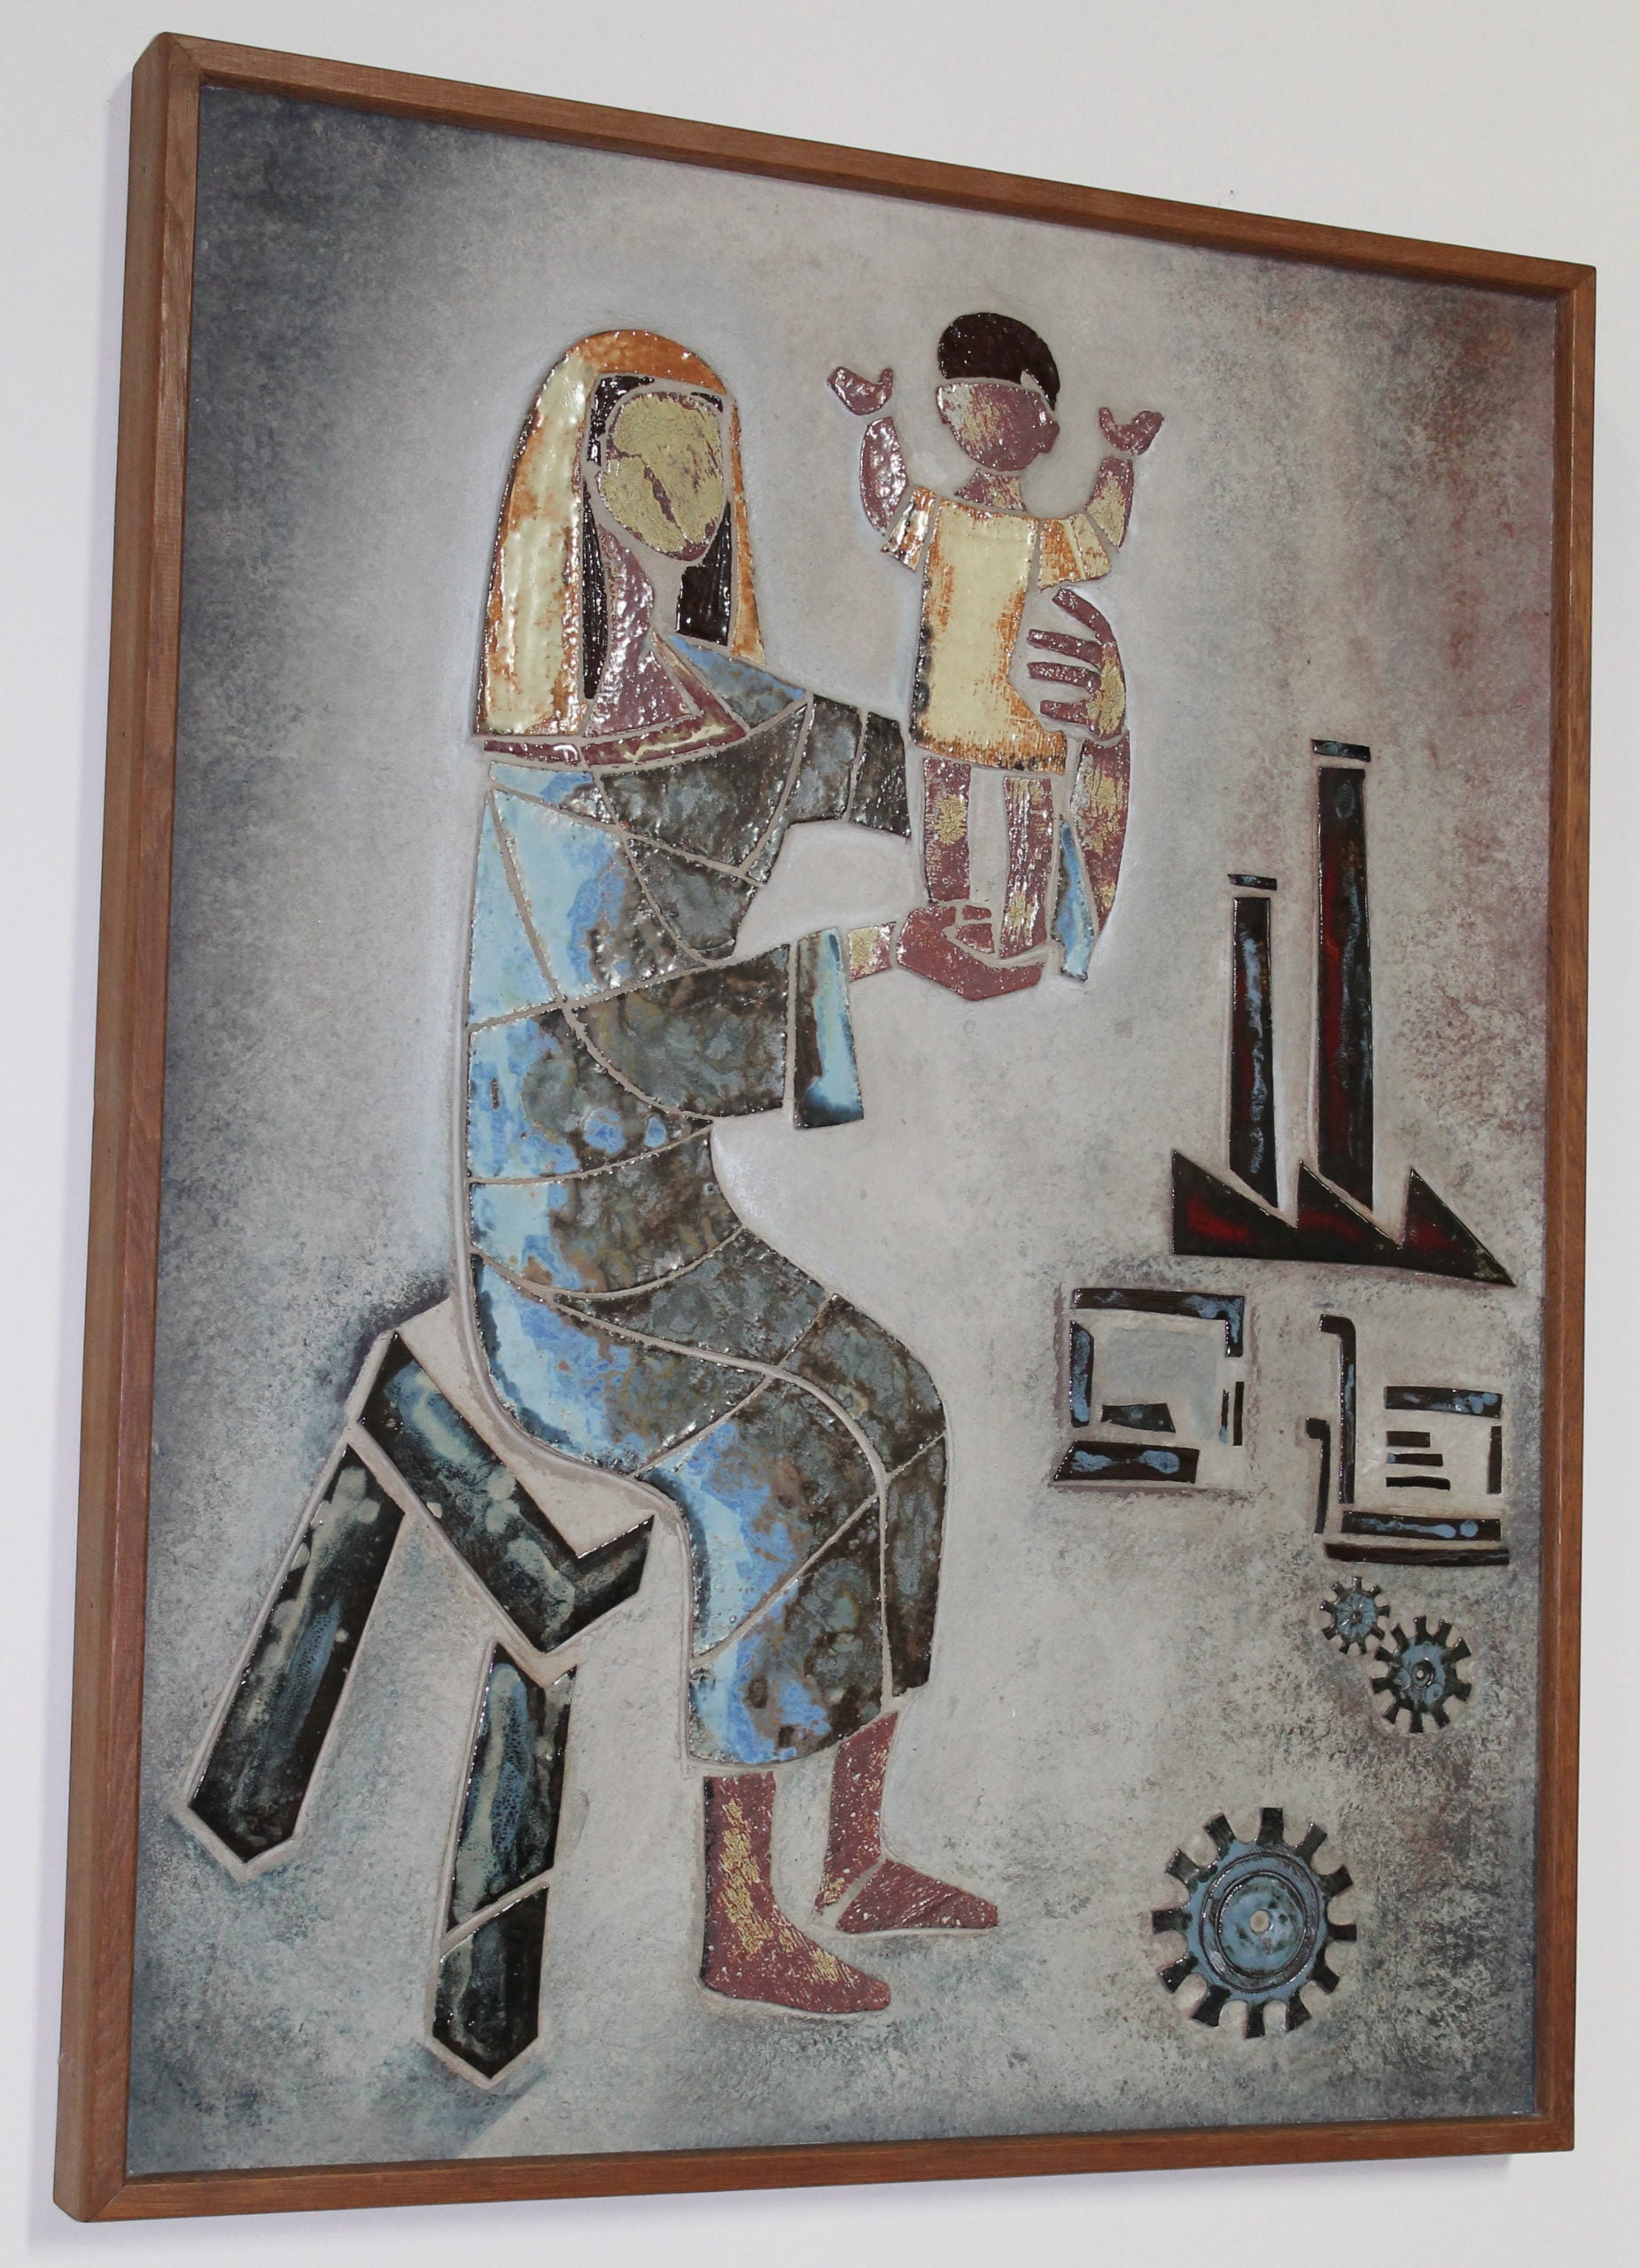 l'une des deux mosaïques données par la communauté des Pères Jésuites de Fayt, représentant une Vierge à l'Enfant dans un paysage industriel